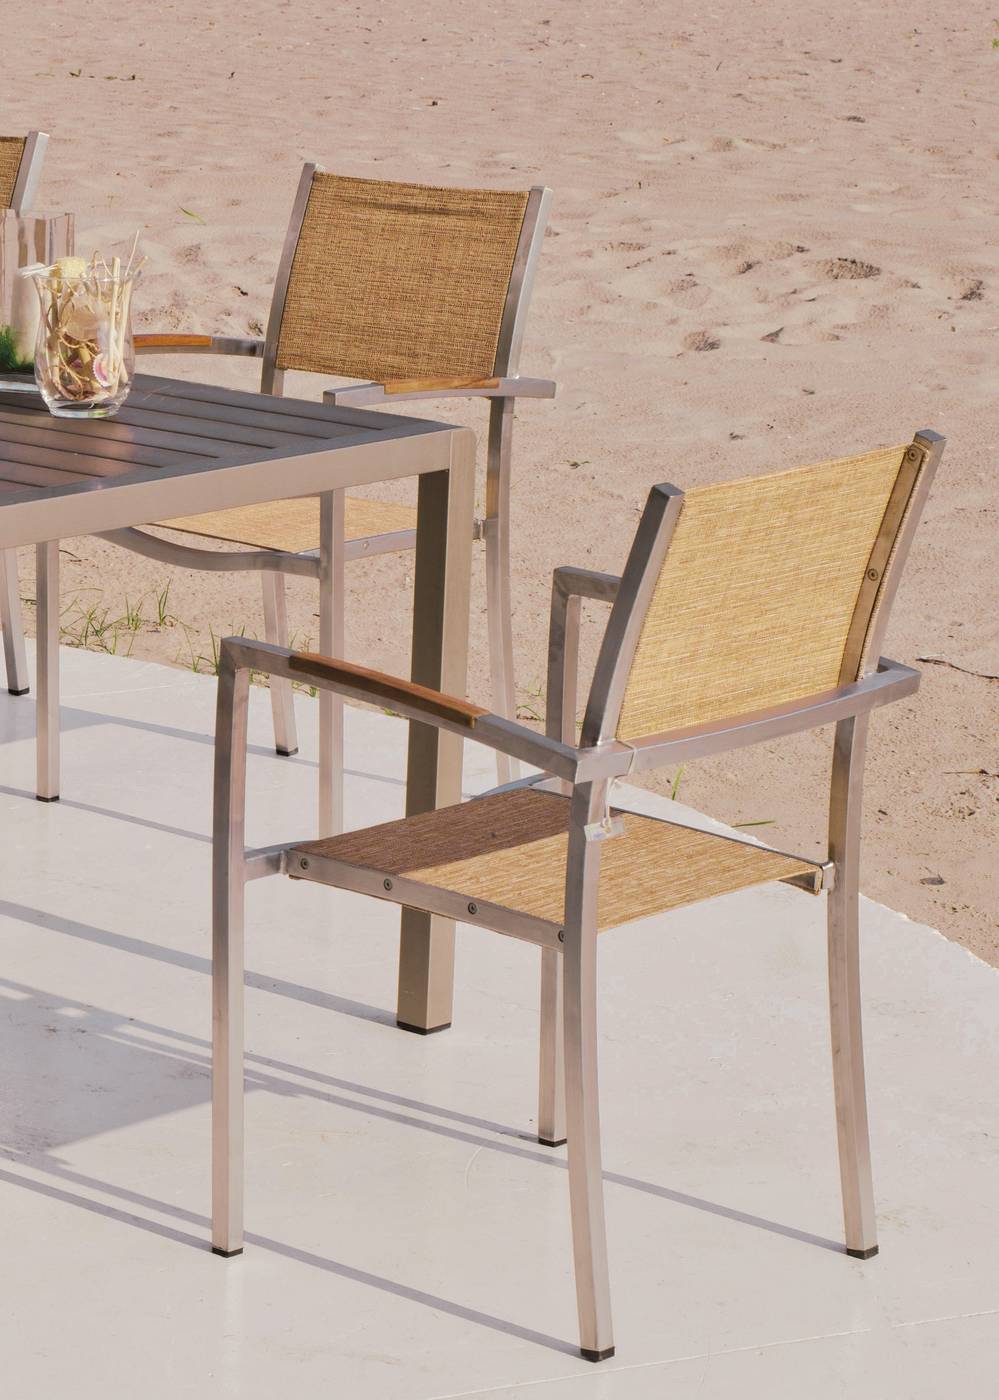 Set Camelia Natural Viena - Conjunto color plata: Mesa de aluminio con tablero de lamas de aluminio + 4 sillones de acero inoxidable y textilen.